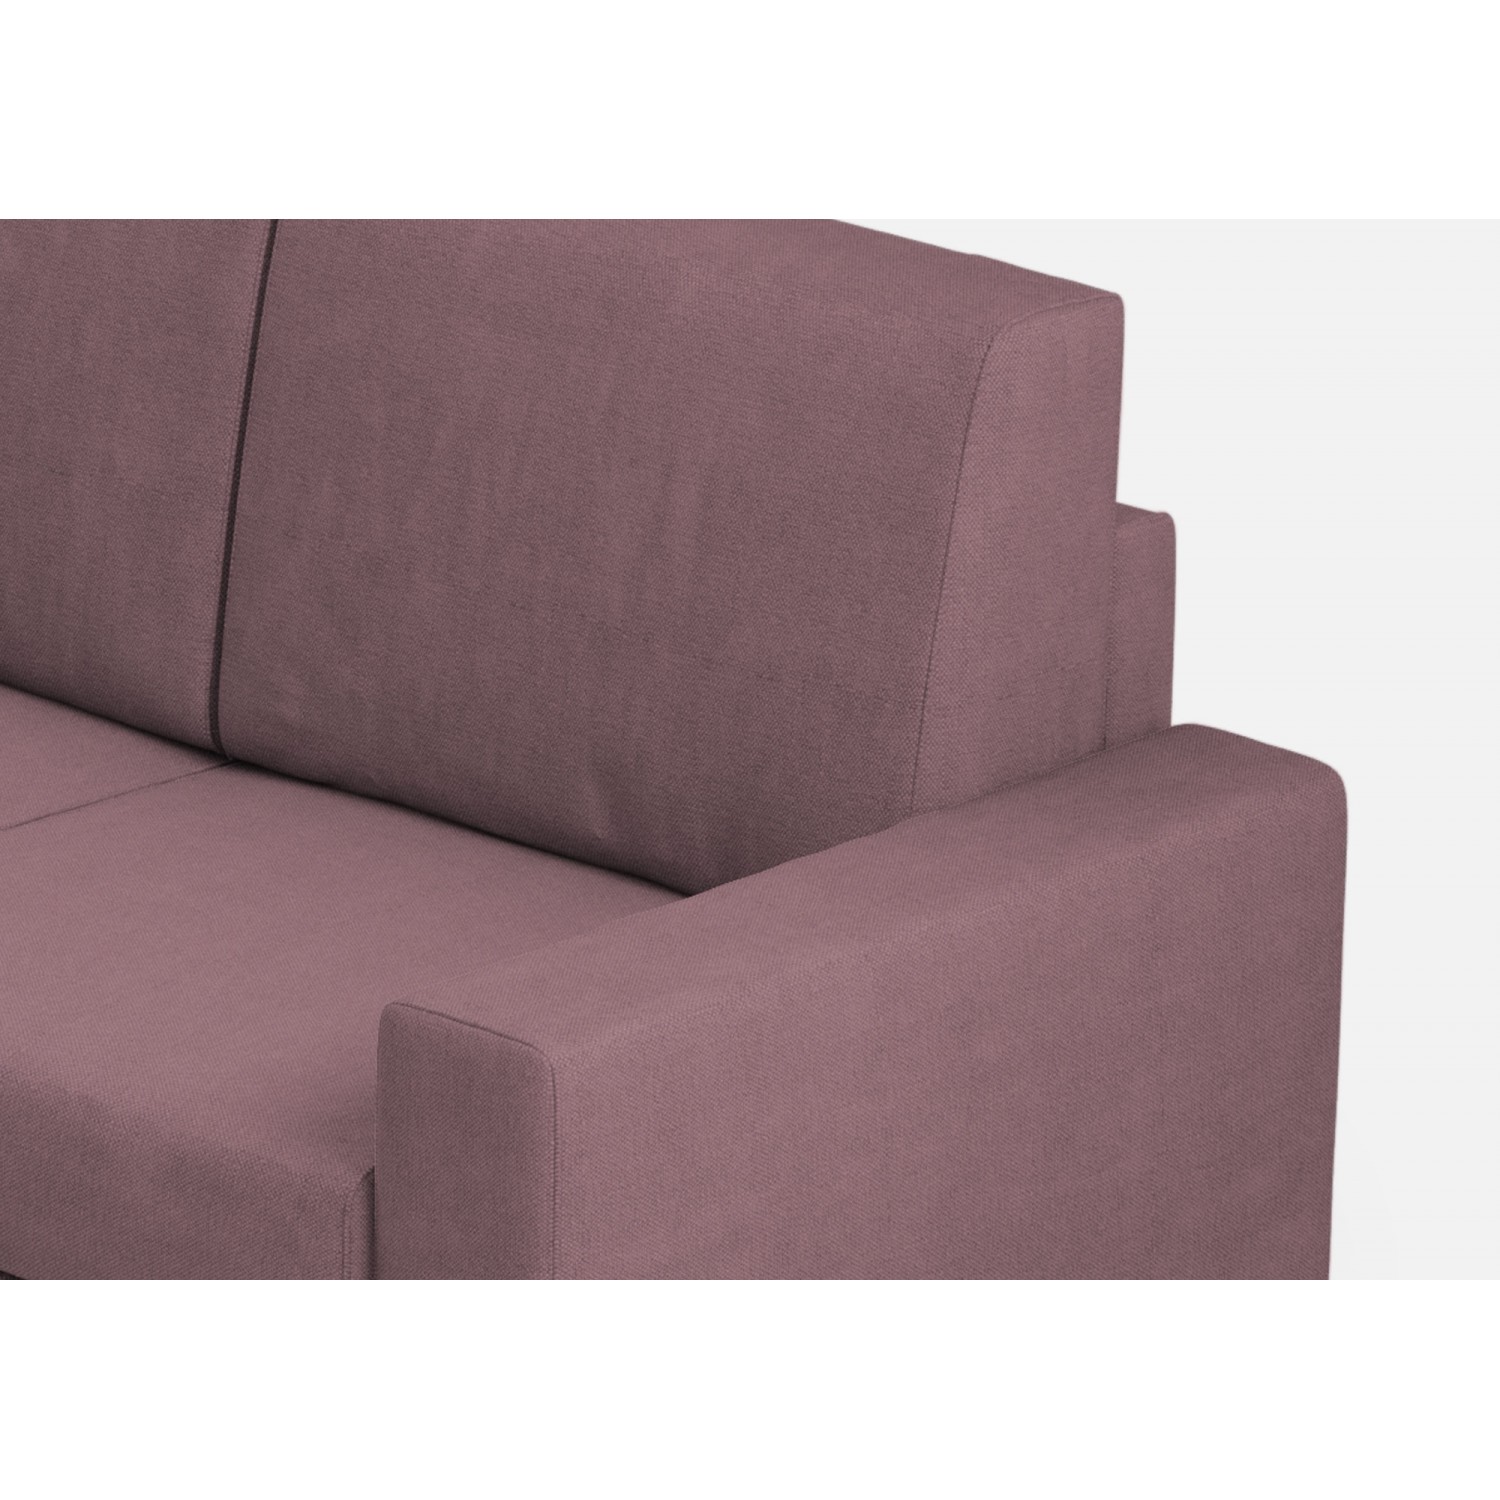 Ityhome Divano Sakar 2 posti (due sedute da 60cm)+ angolo + divano 2 posti (due sedute da 60cm) misure esterne L.226x226 colore prugna